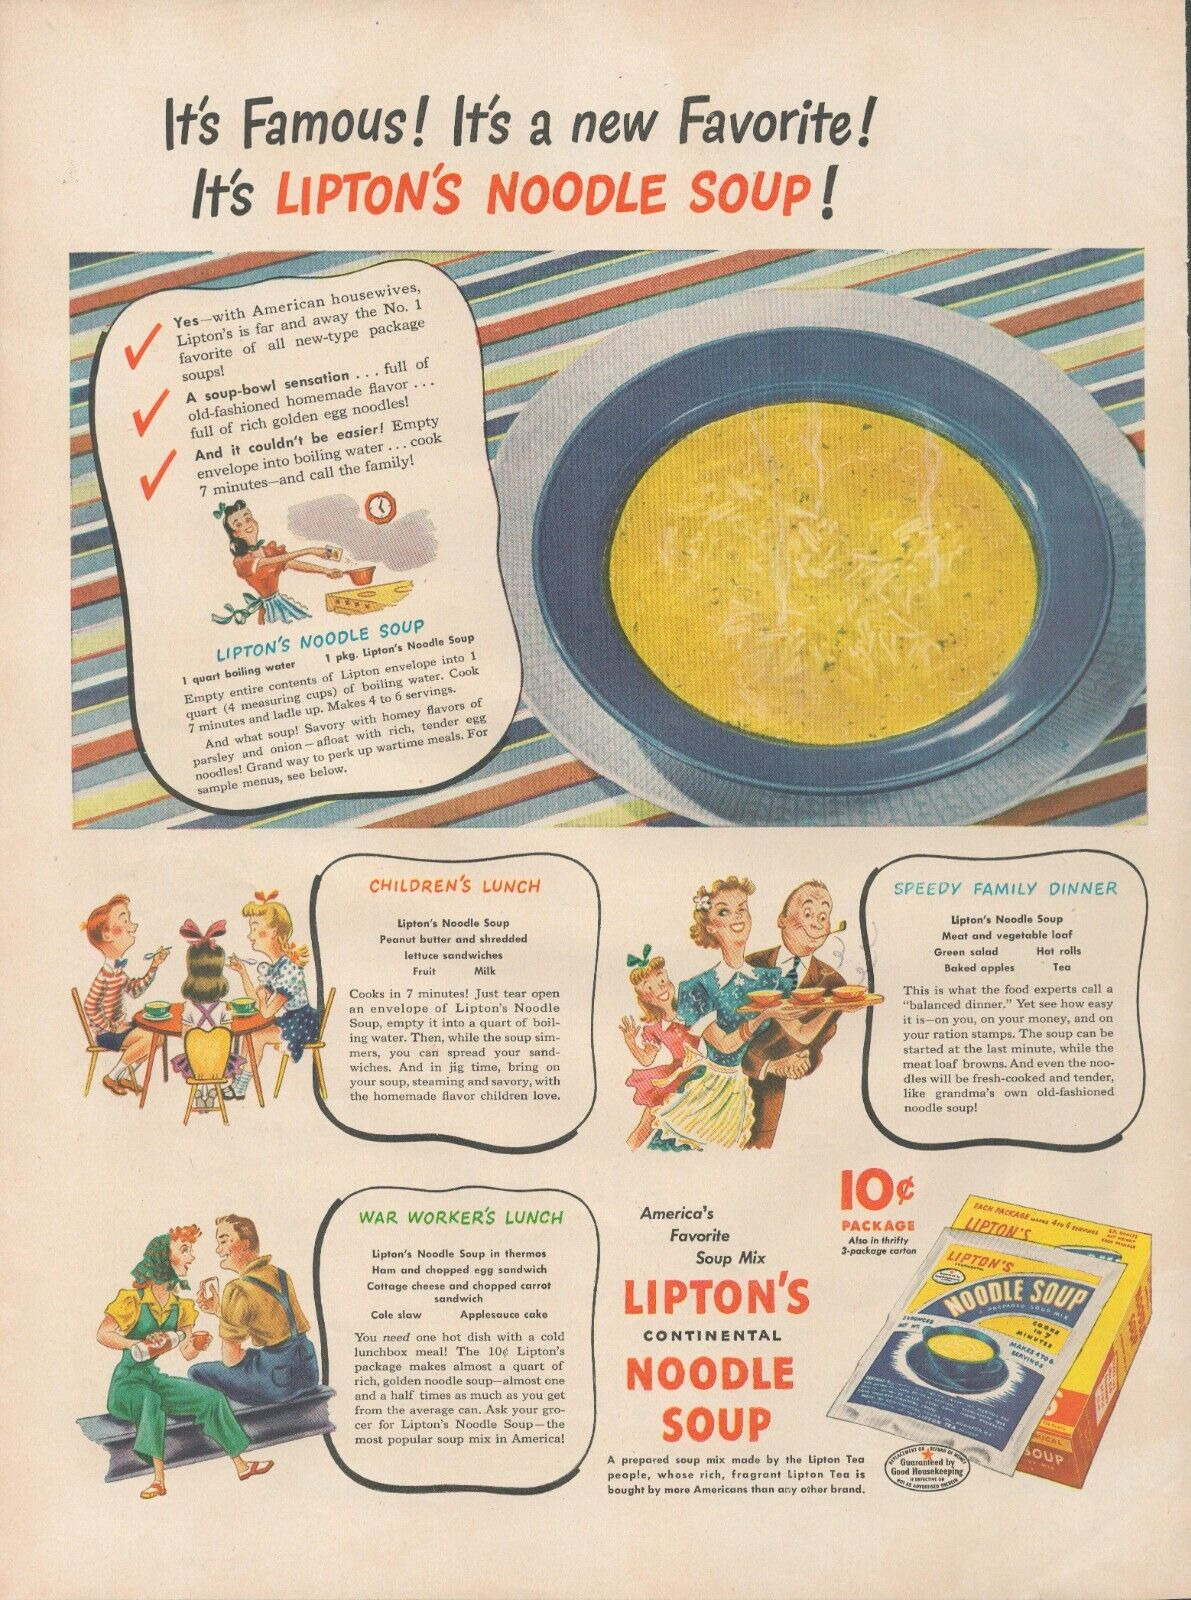 1944 Lipton's Noodle Soup It's Famous New Favorite Vintage Print Ad